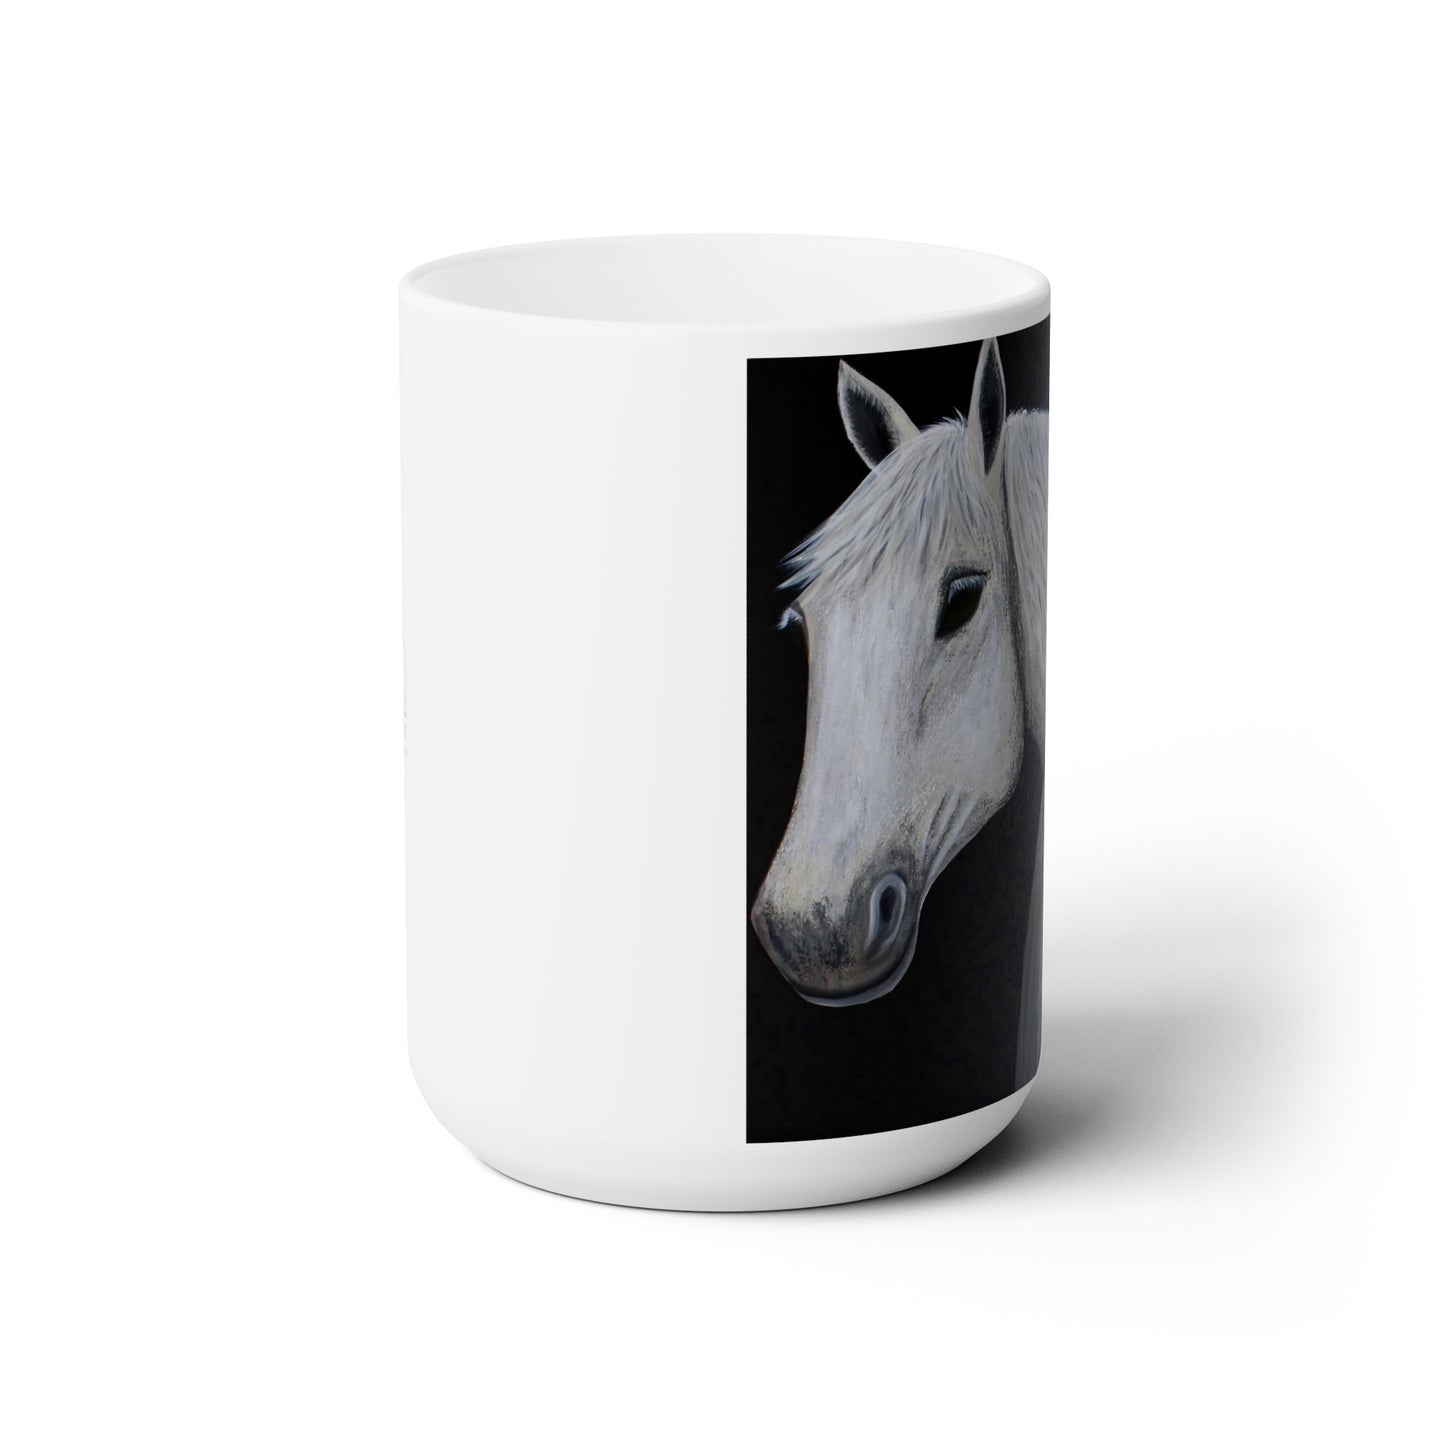 Coffee Mug - Ceramic Mug 15oz - Horse mug - Equestrian mug - Ghost - Stamina